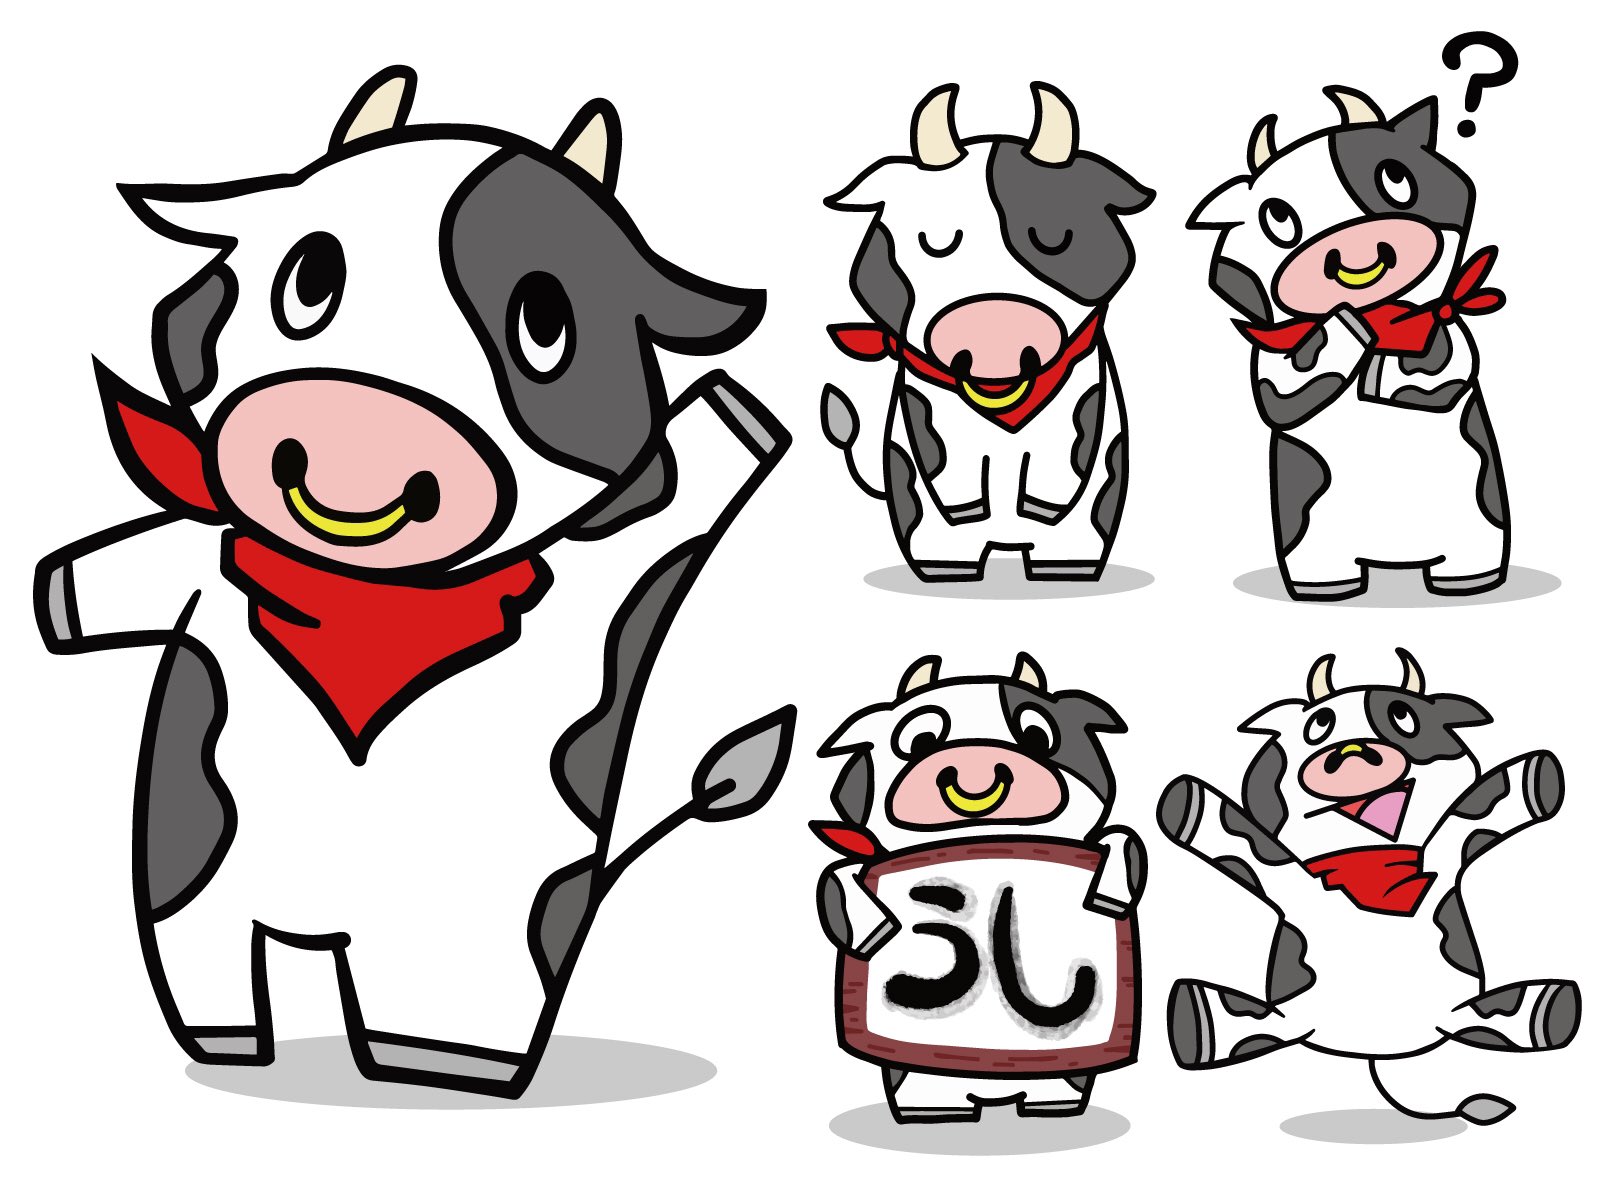 Yuji N Design 昨日に引き続き 牛のイラスト 描いたー もっと可愛いイラスト描けるように頑張るぞー 牛きゃら 丑年 イラスト好きさんと繋がりたい かわいい イラストac Ipadpro プロクリエイト T Co 4qnhkikom8 Twitter